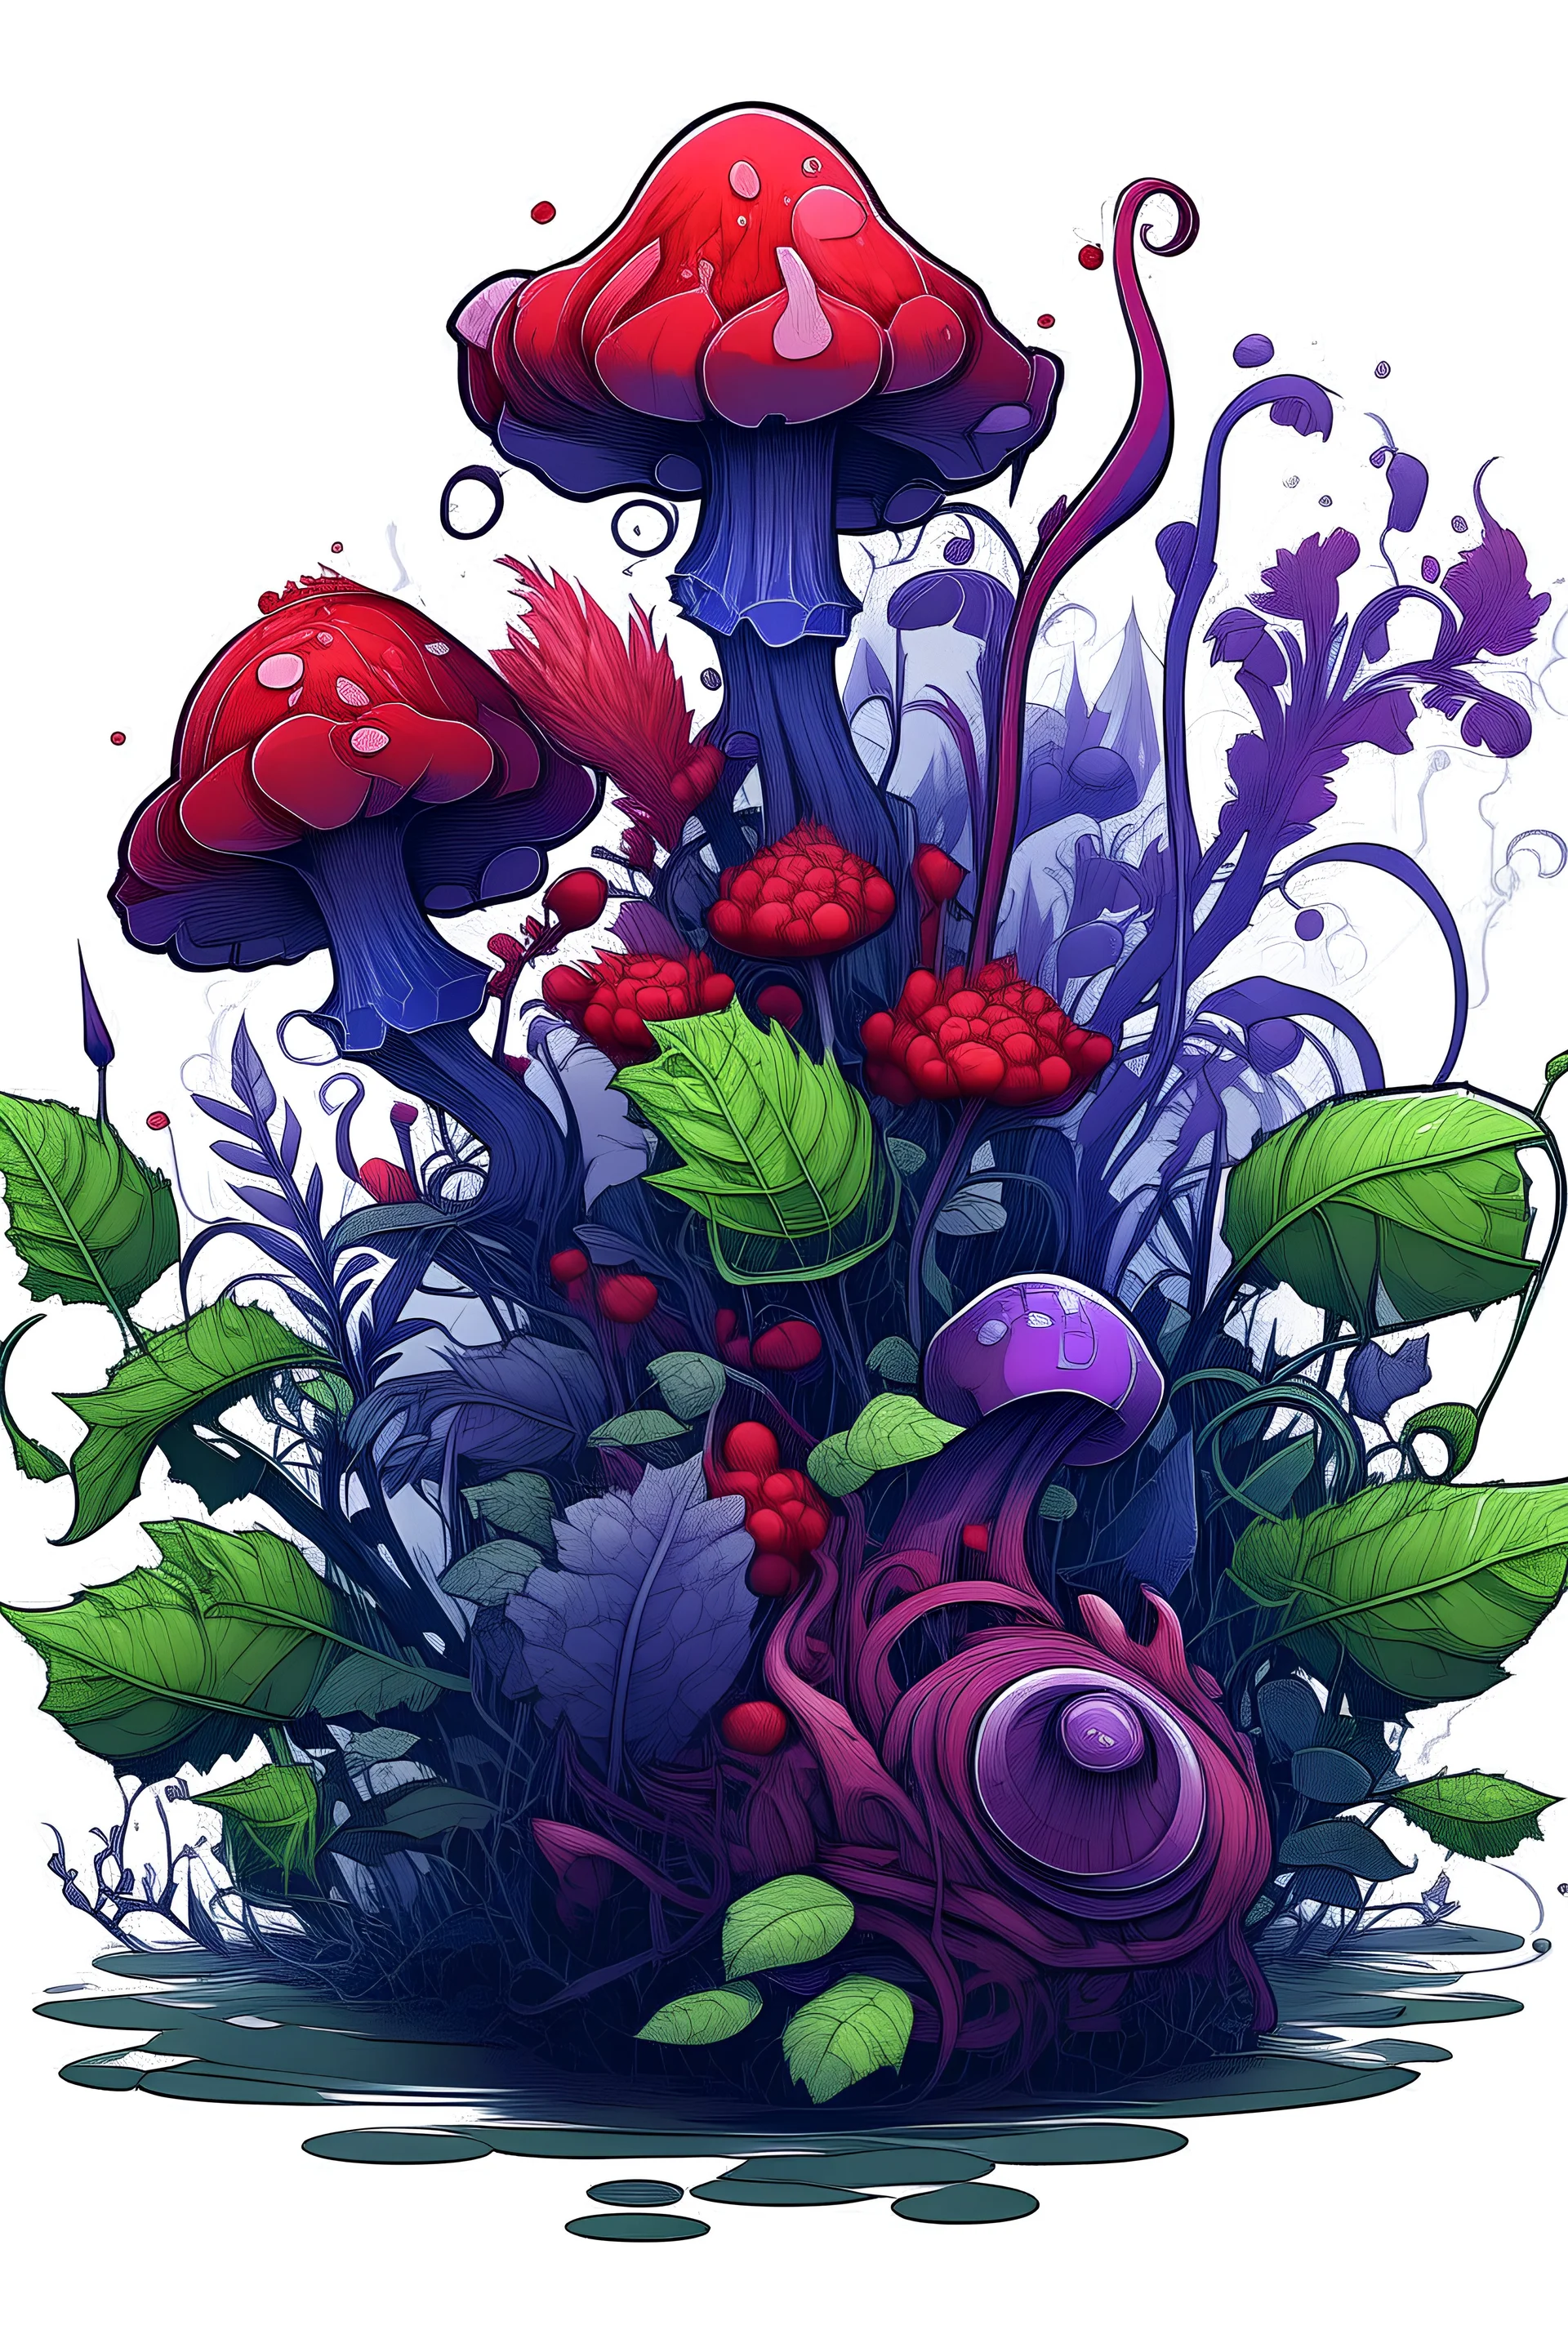 zehirli bitki, oyun stili, mor ve kırmızı renklerde, epik sıra dışı görünümlü bir bitki çizimi